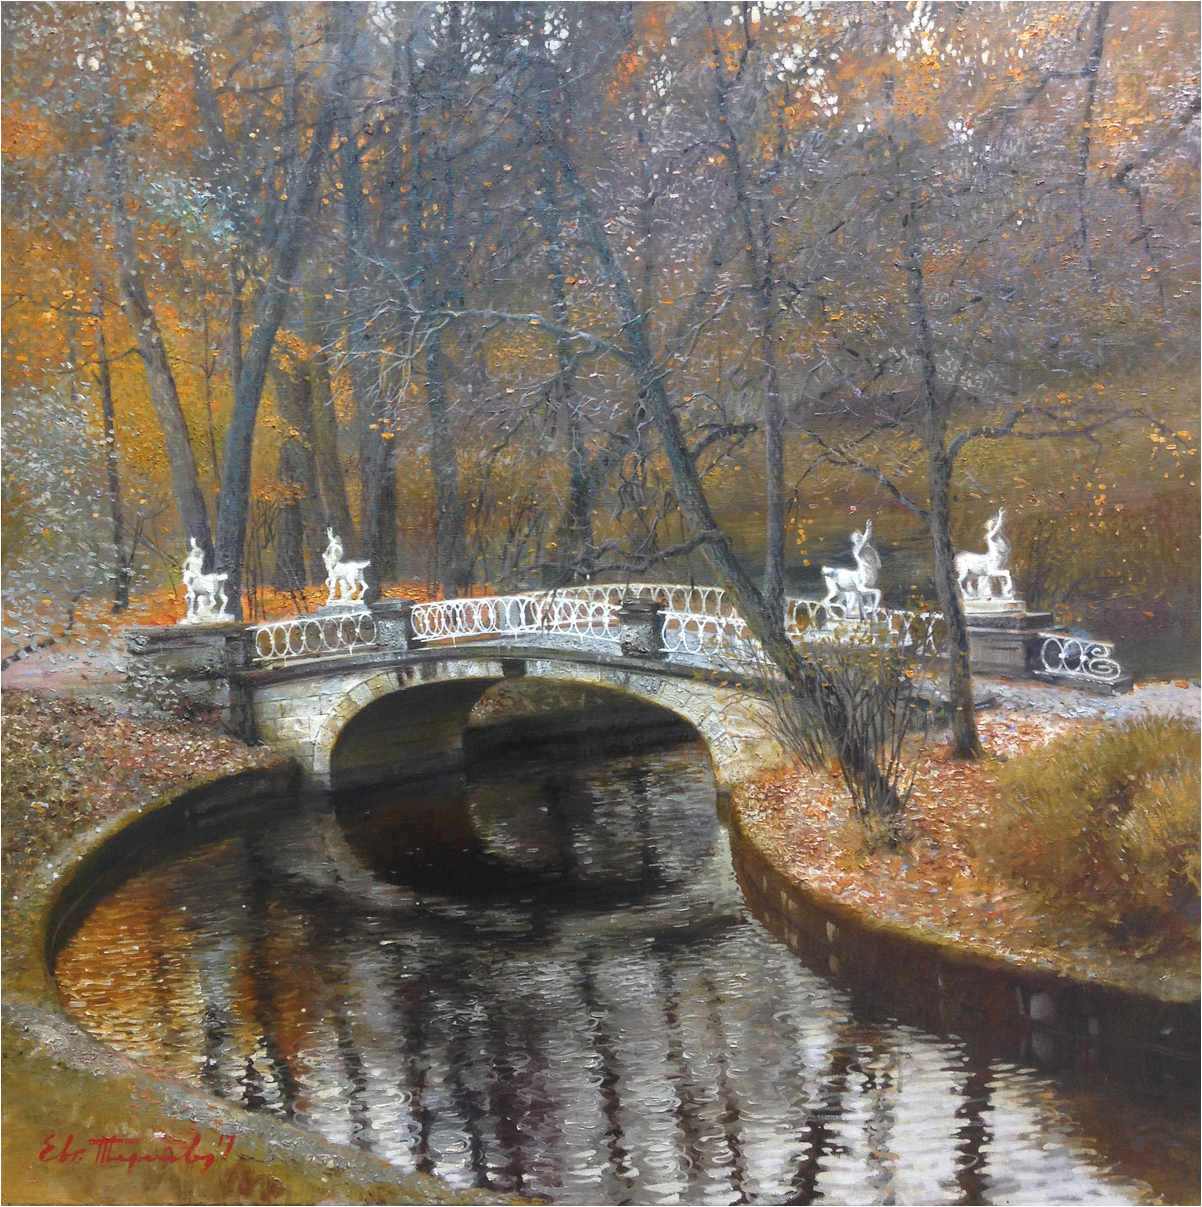 The Bridge of Centaurs - 1, Eugene Terekhov, 买画 油